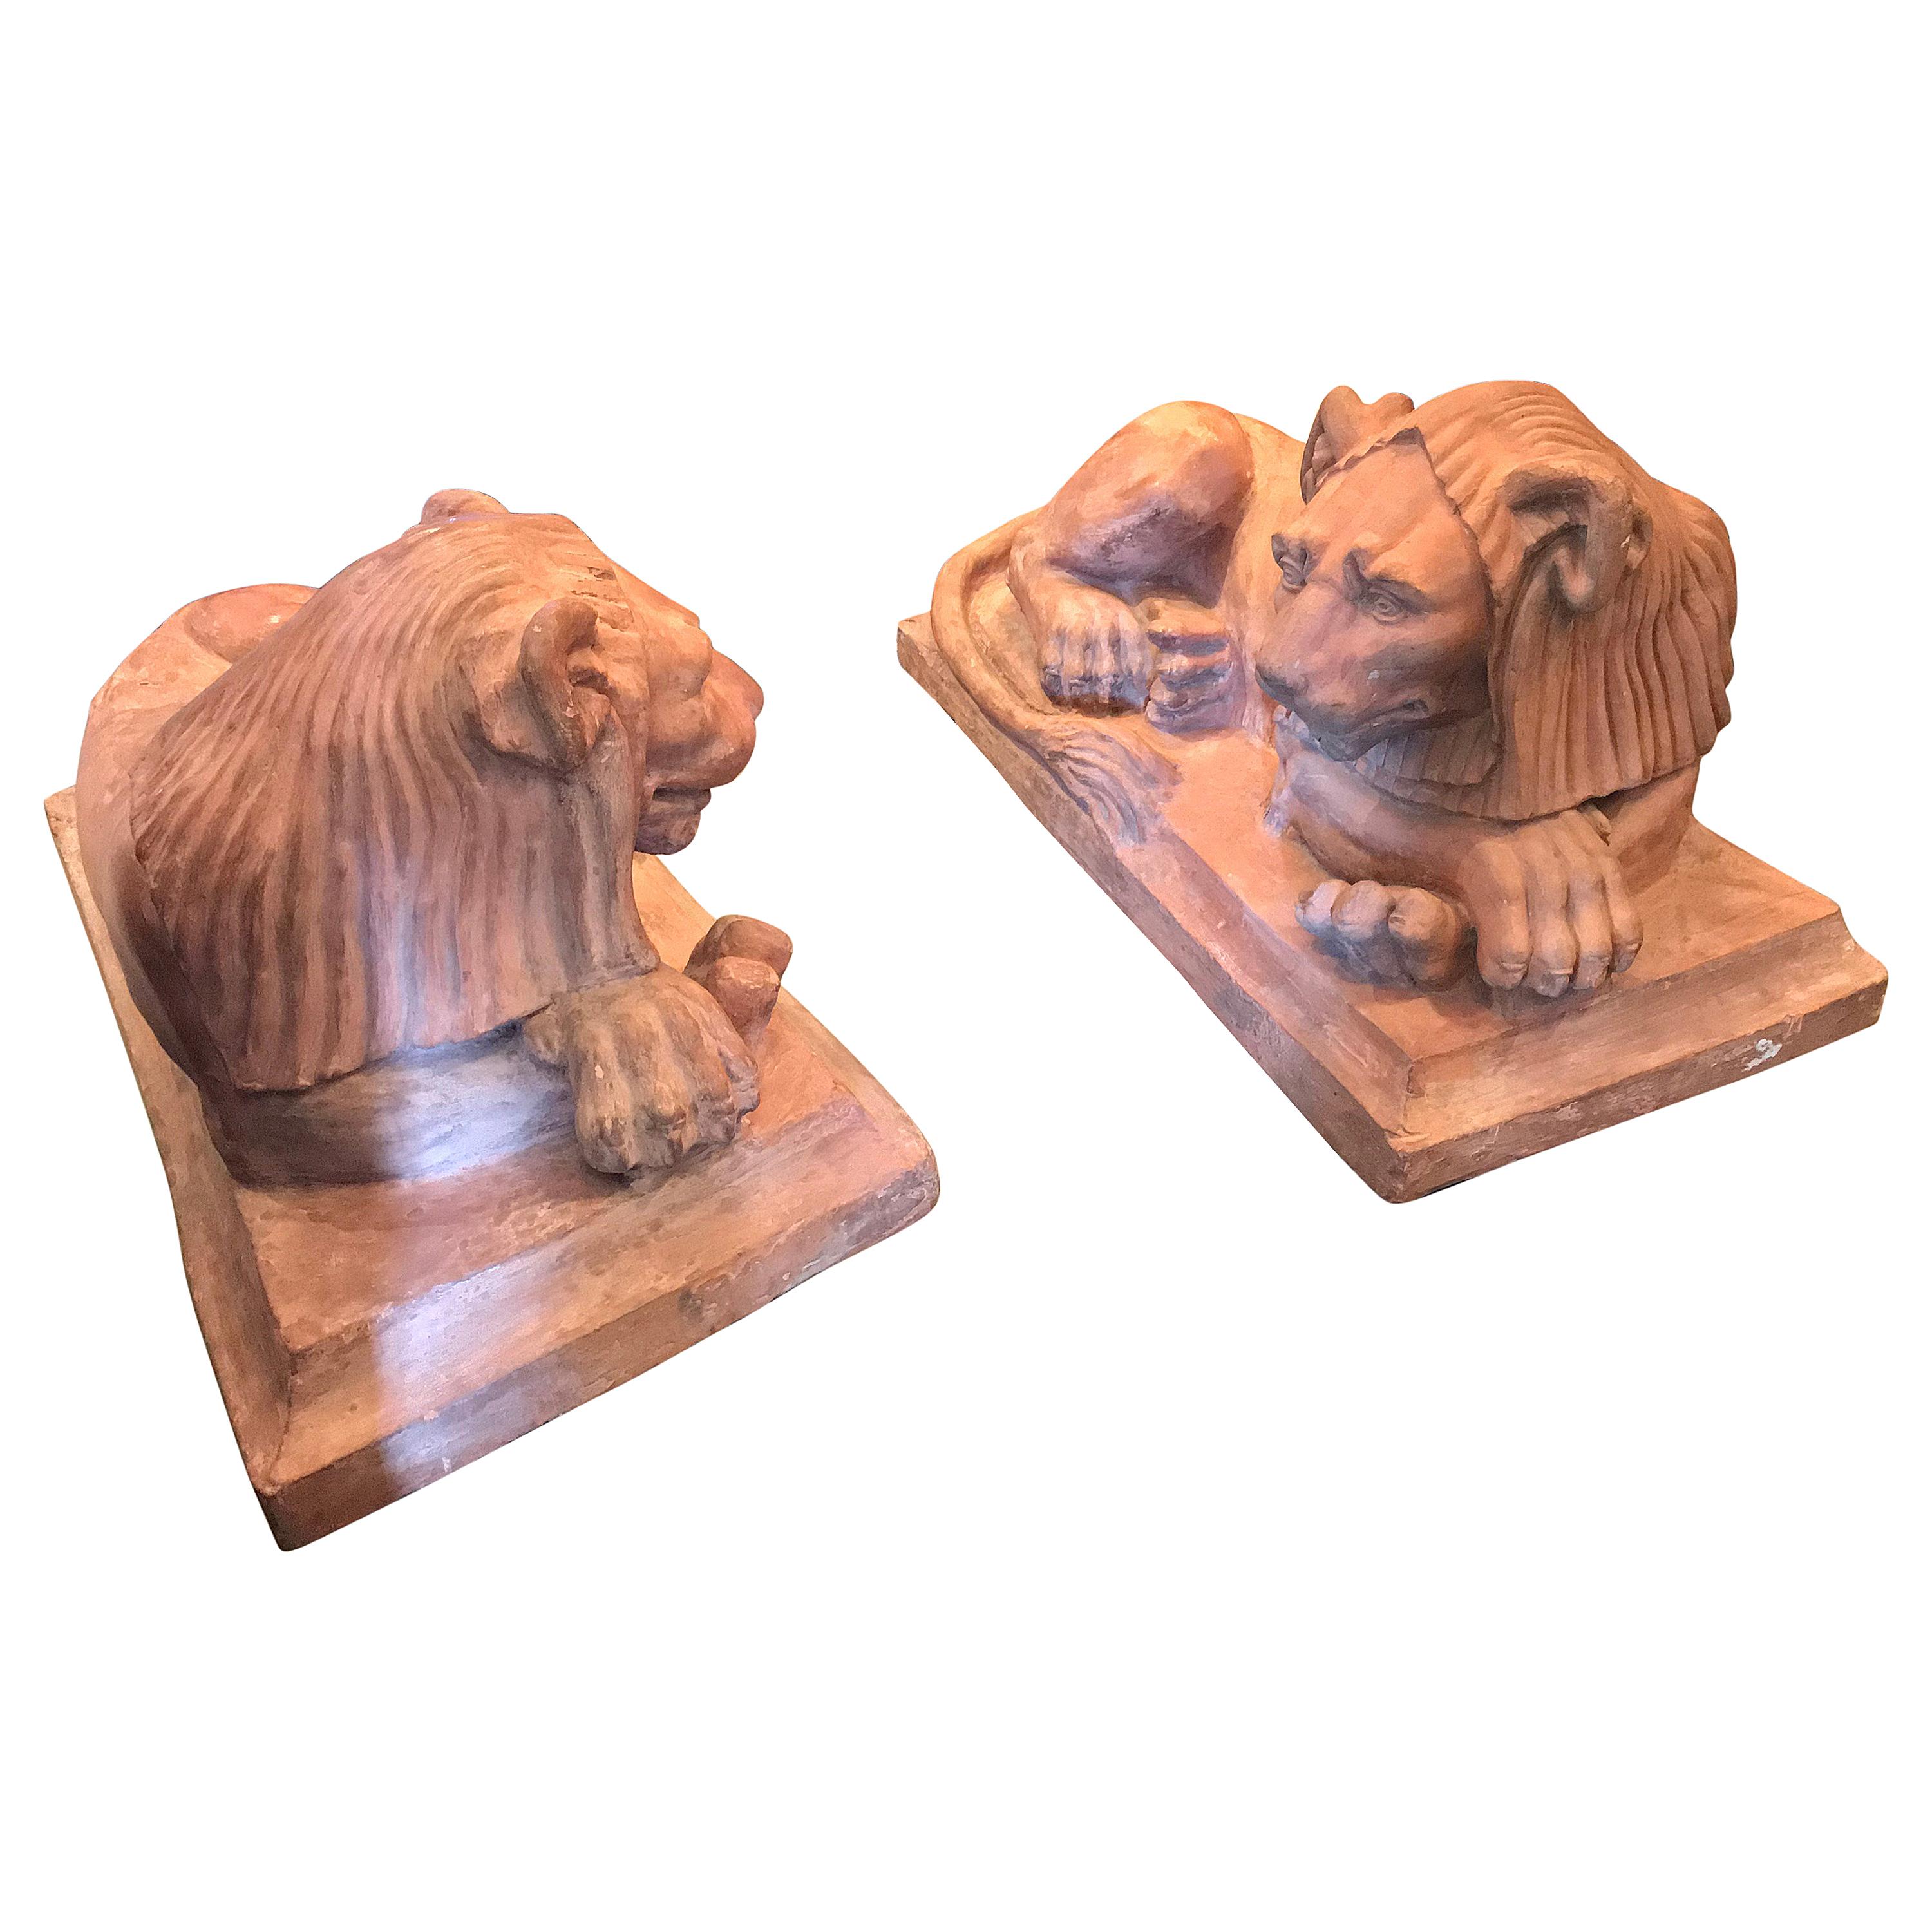 Rare Pair French Retour D'egypt Terracotta Lions Sculptures Statues Los Angeles